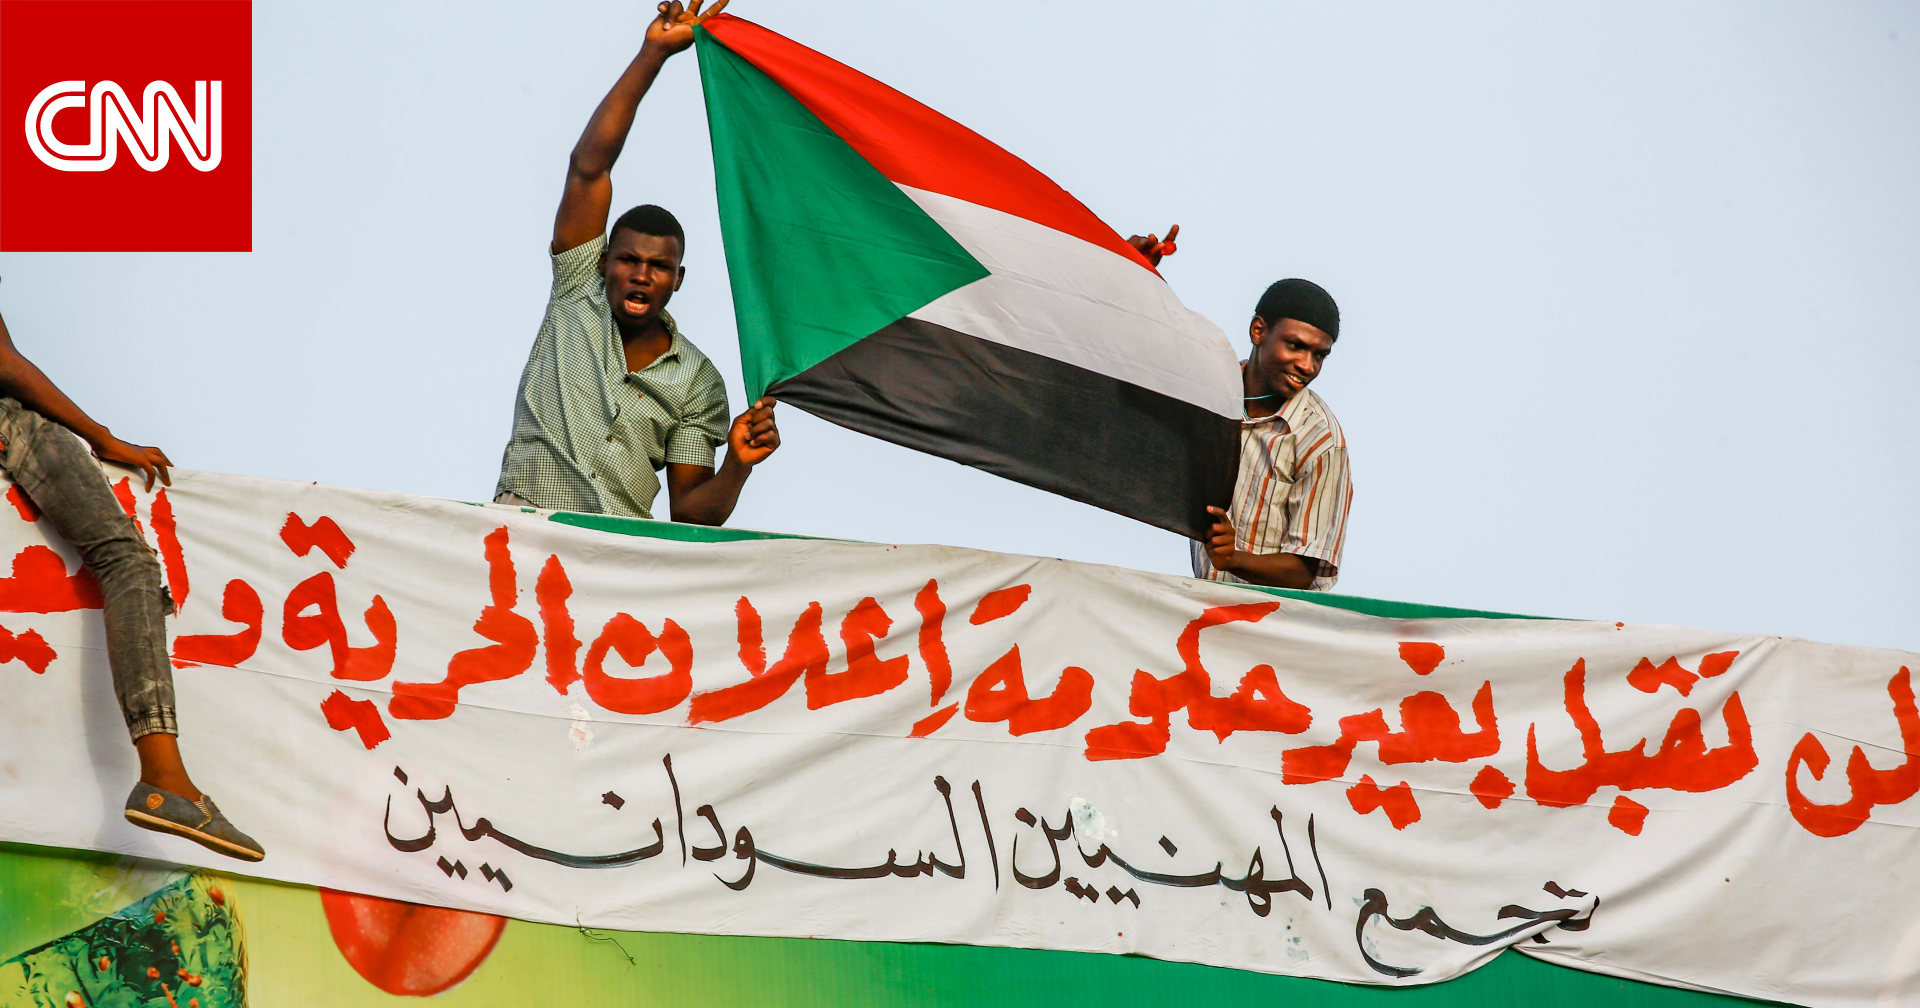 الإخوان المسلمين في السودان ينتقدون  أخطاء  وقعت فيها  الحرية والتغيير  - CNN Arabic